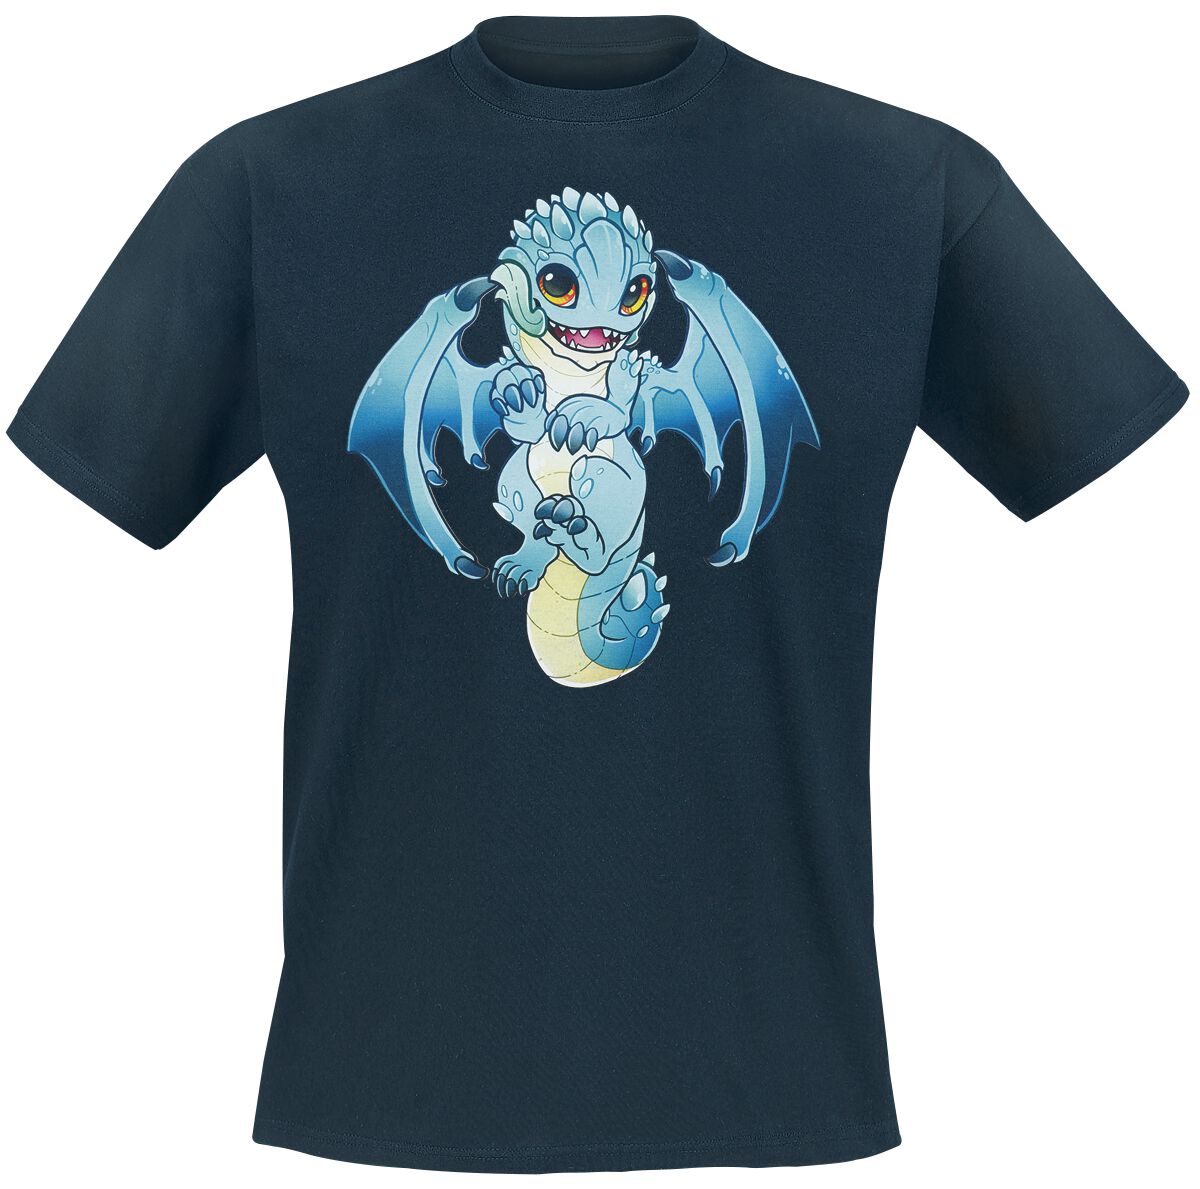 Guild Wars - Gaming T-Shirt - Baby Aurene by RinTheYordle - S bis XL - für Männer - Größe L - dunkelblau  - EMP exklusives Merchandise!